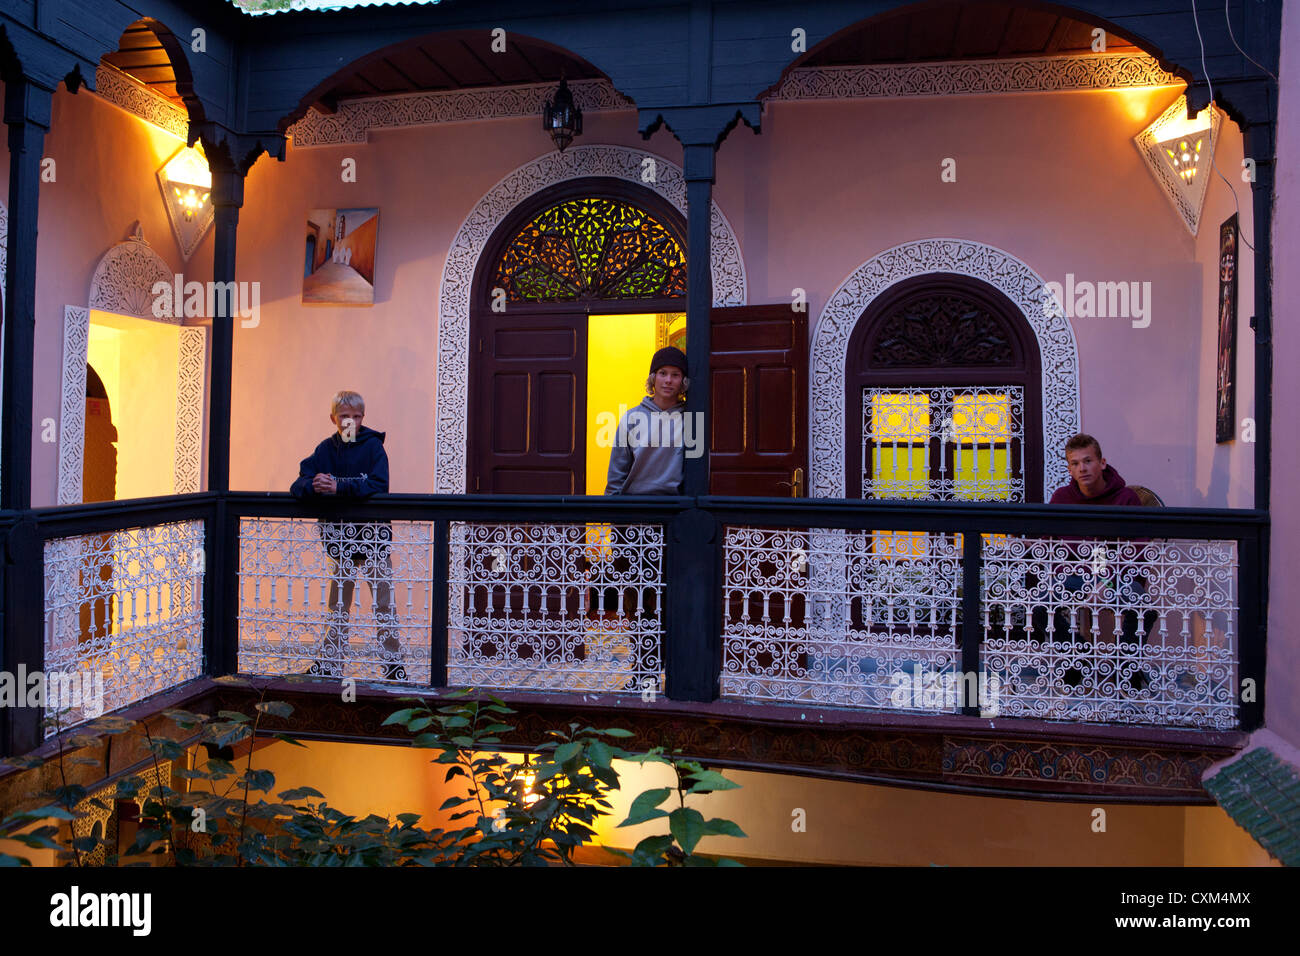 Three boys on balcony in riad, Marrakech, Morocco Stock Photo